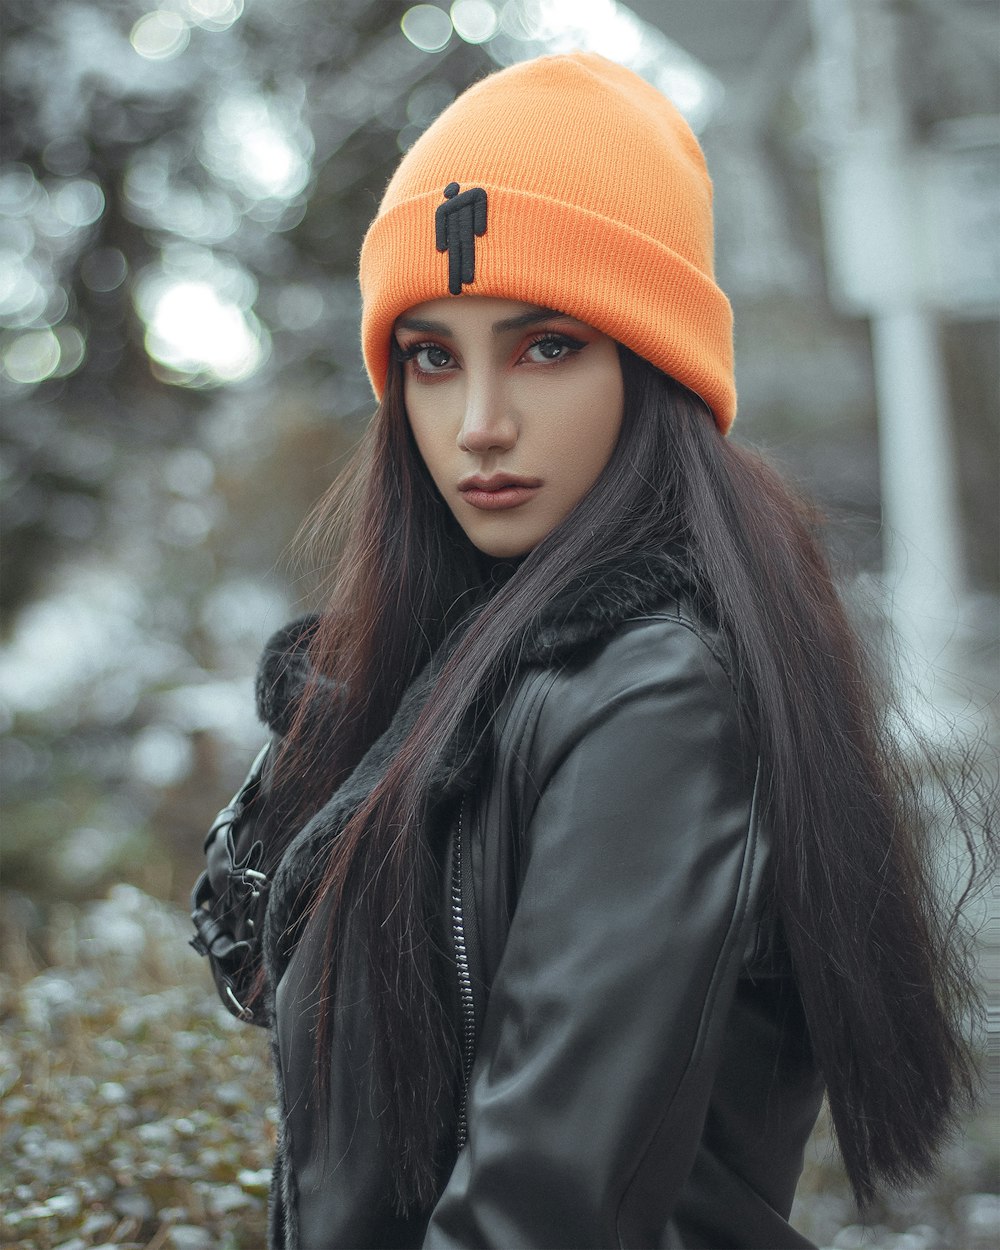 a woman with long hair wearing an orange beanie